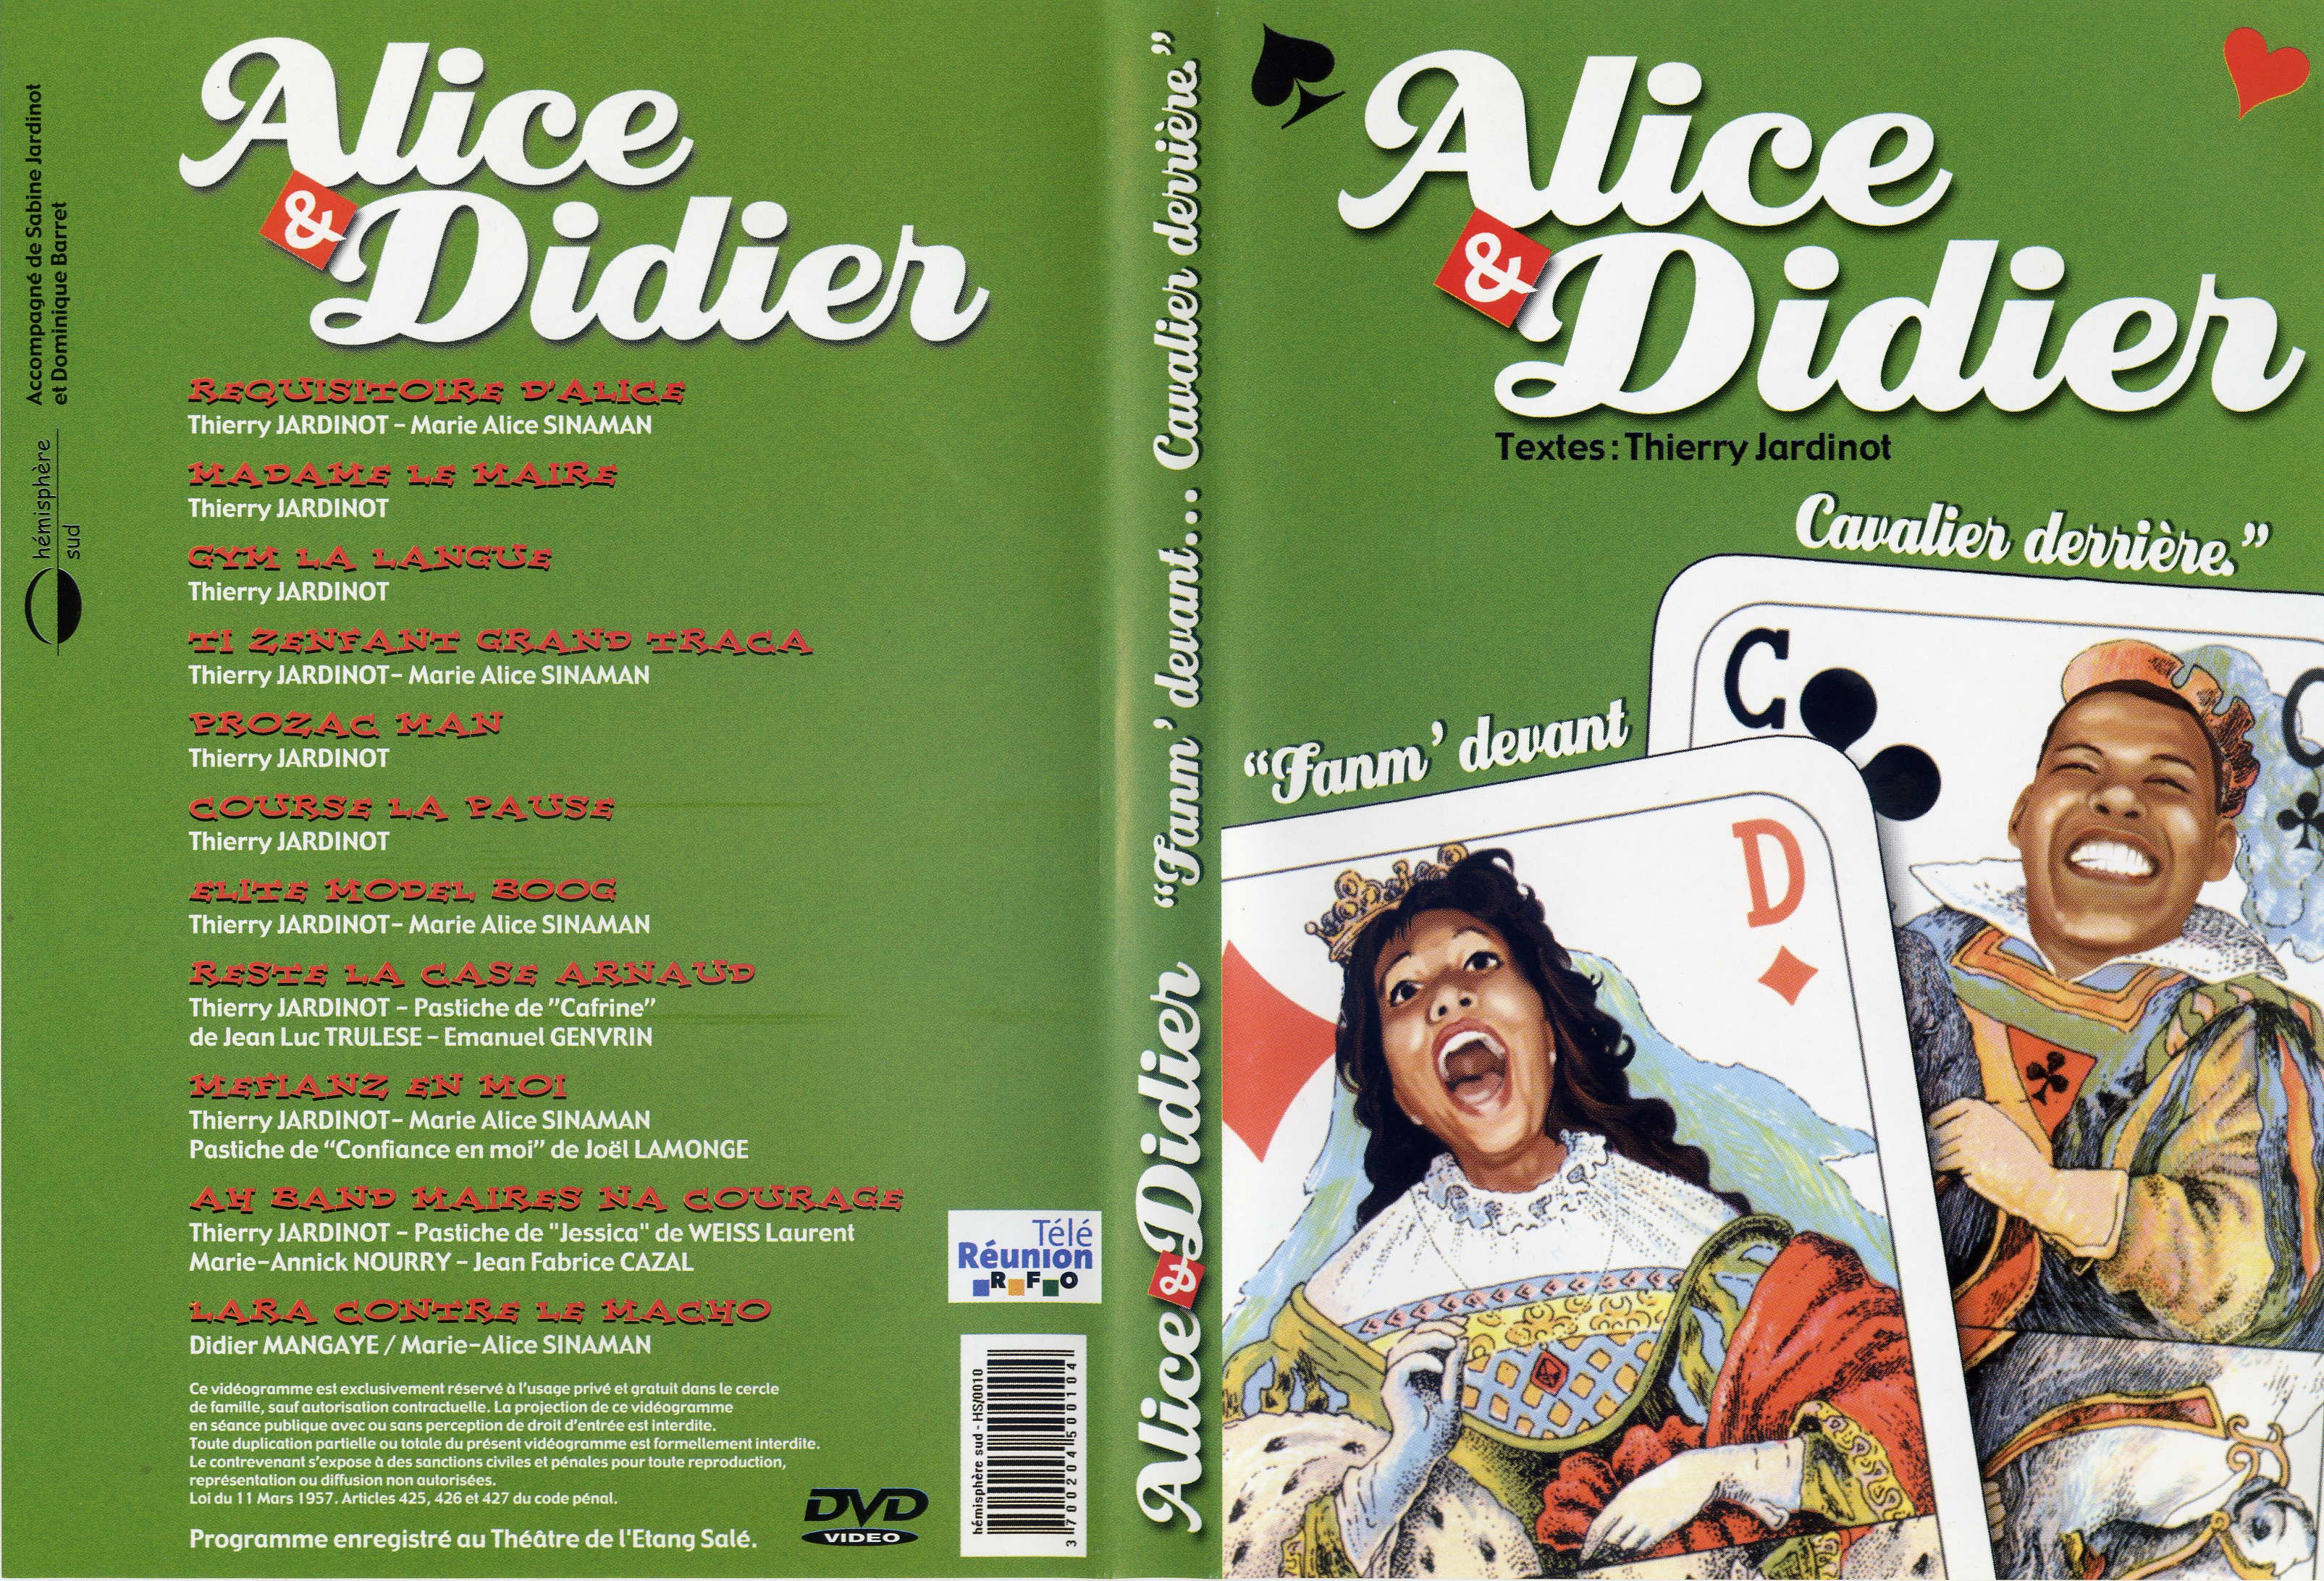 Jaquette DVD Alice et Didier